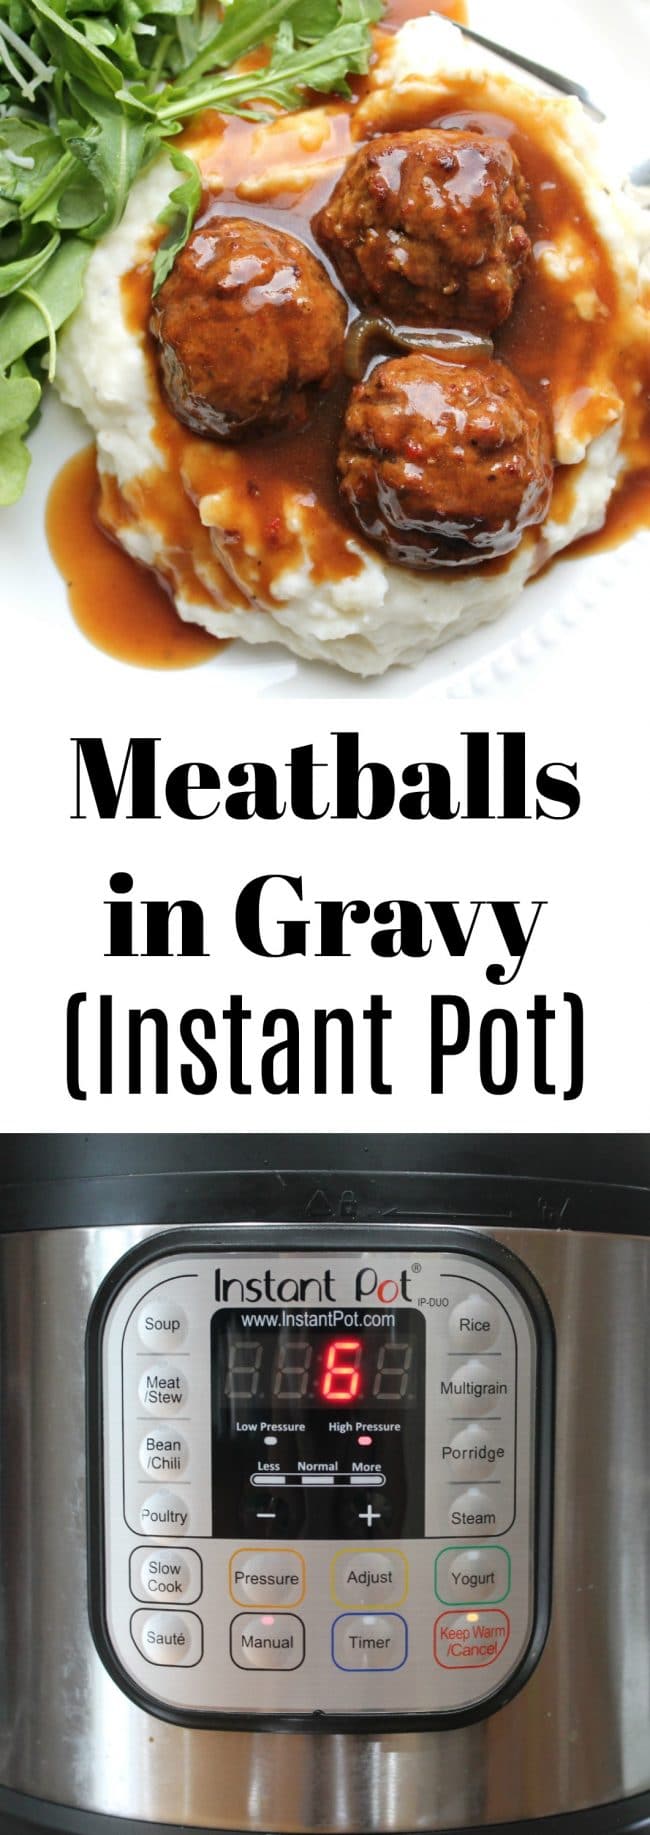 Meatballs in Gravy in Instant Pot 